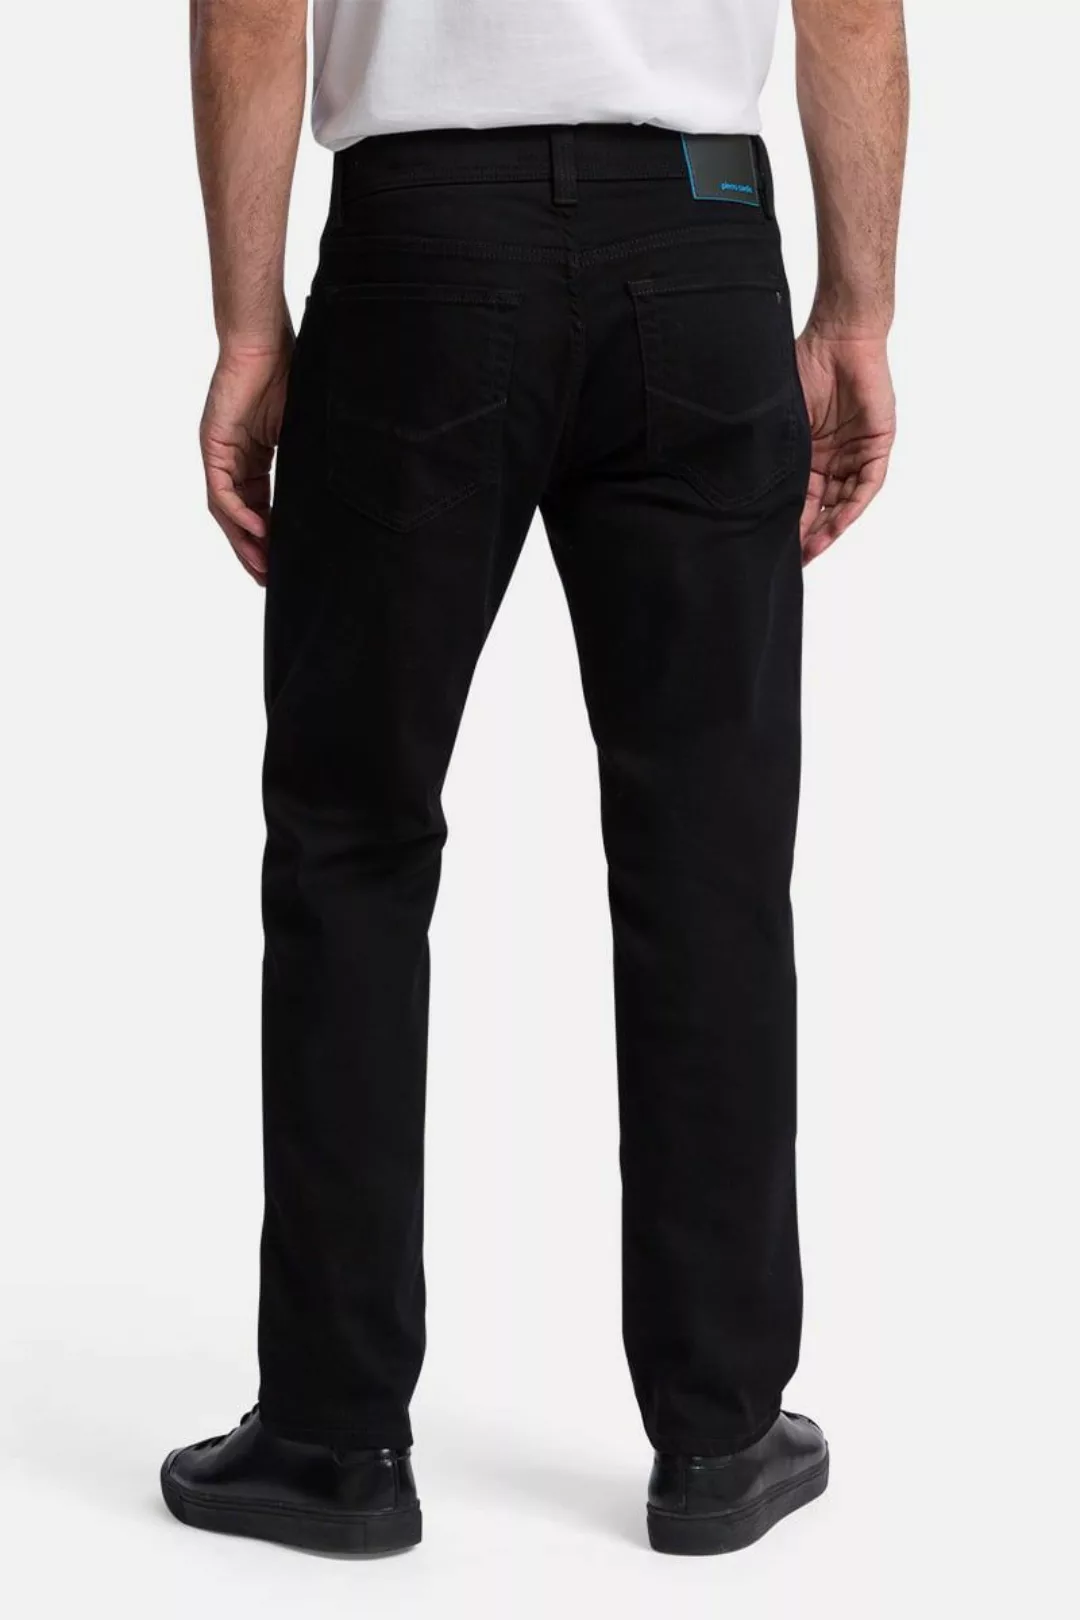 Pierre Cardin Trousers Lyon Tapered Future Flex Schwarz - Größe W 30 - L 32 günstig online kaufen